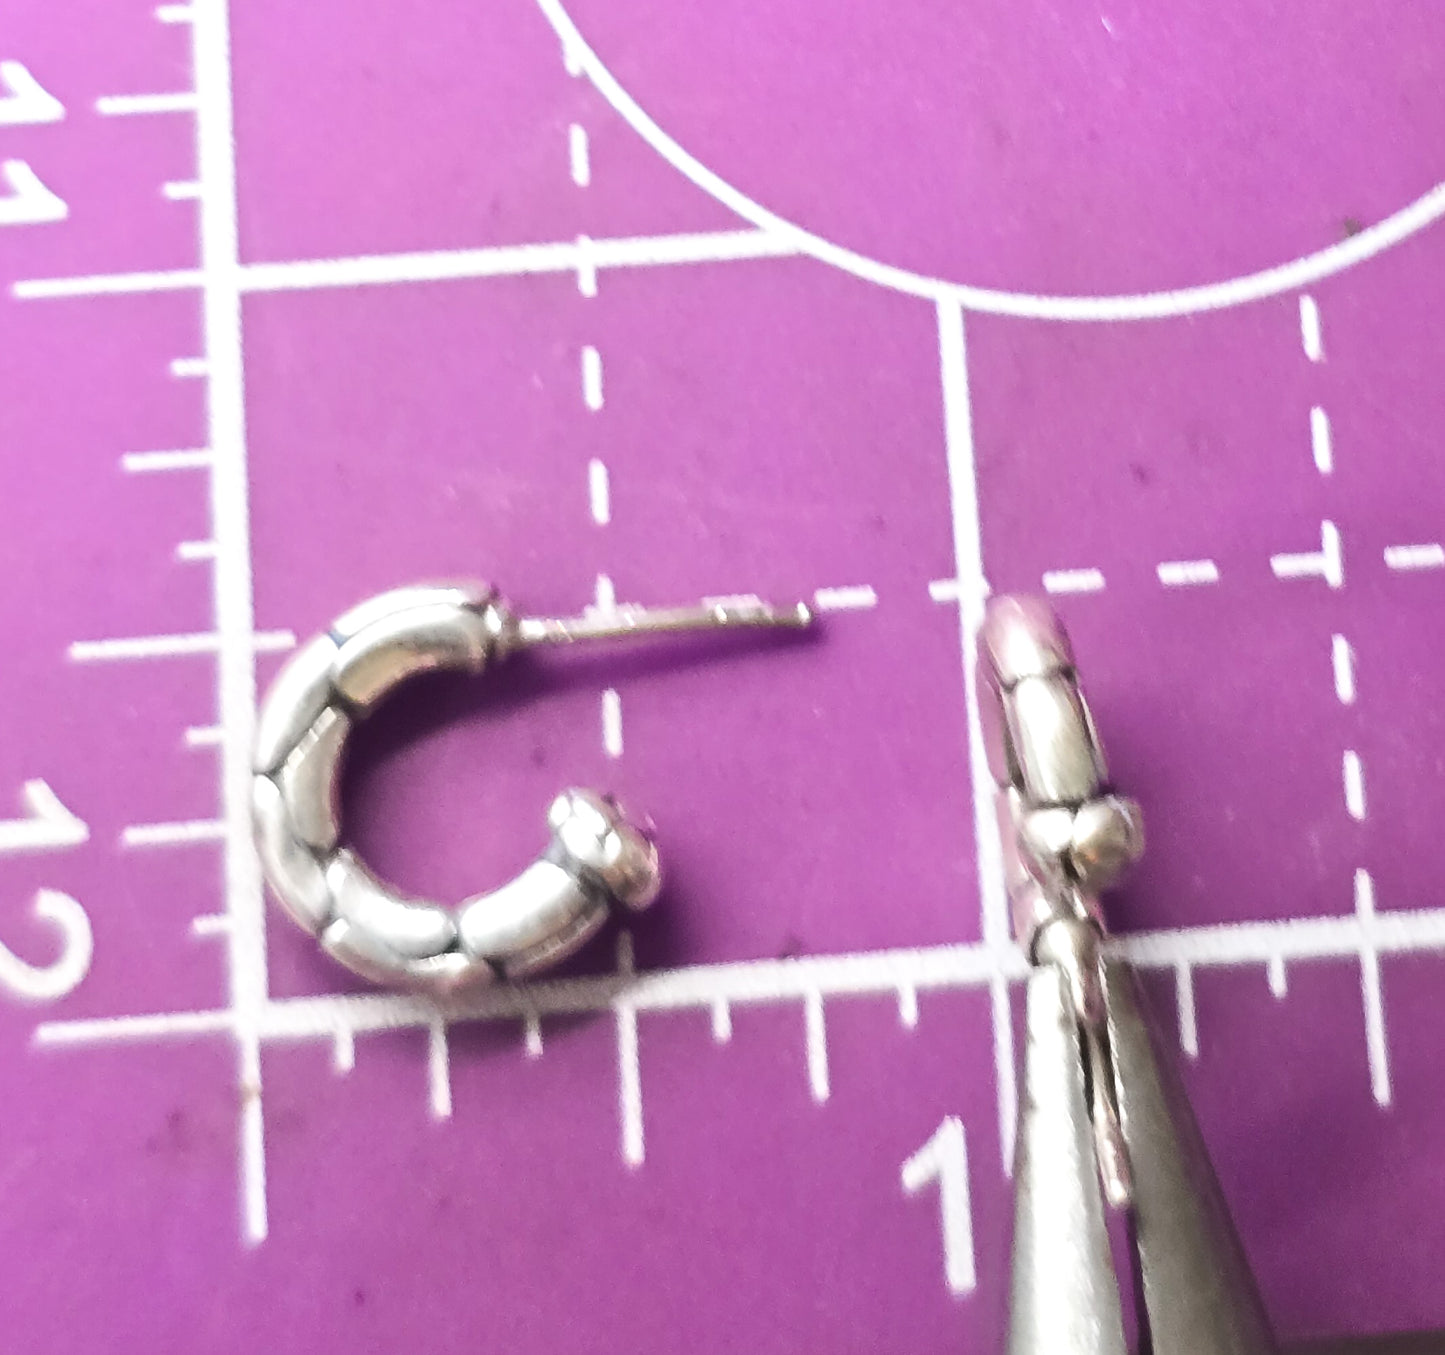 Pebble embossed half hoop sterling silver post earrings